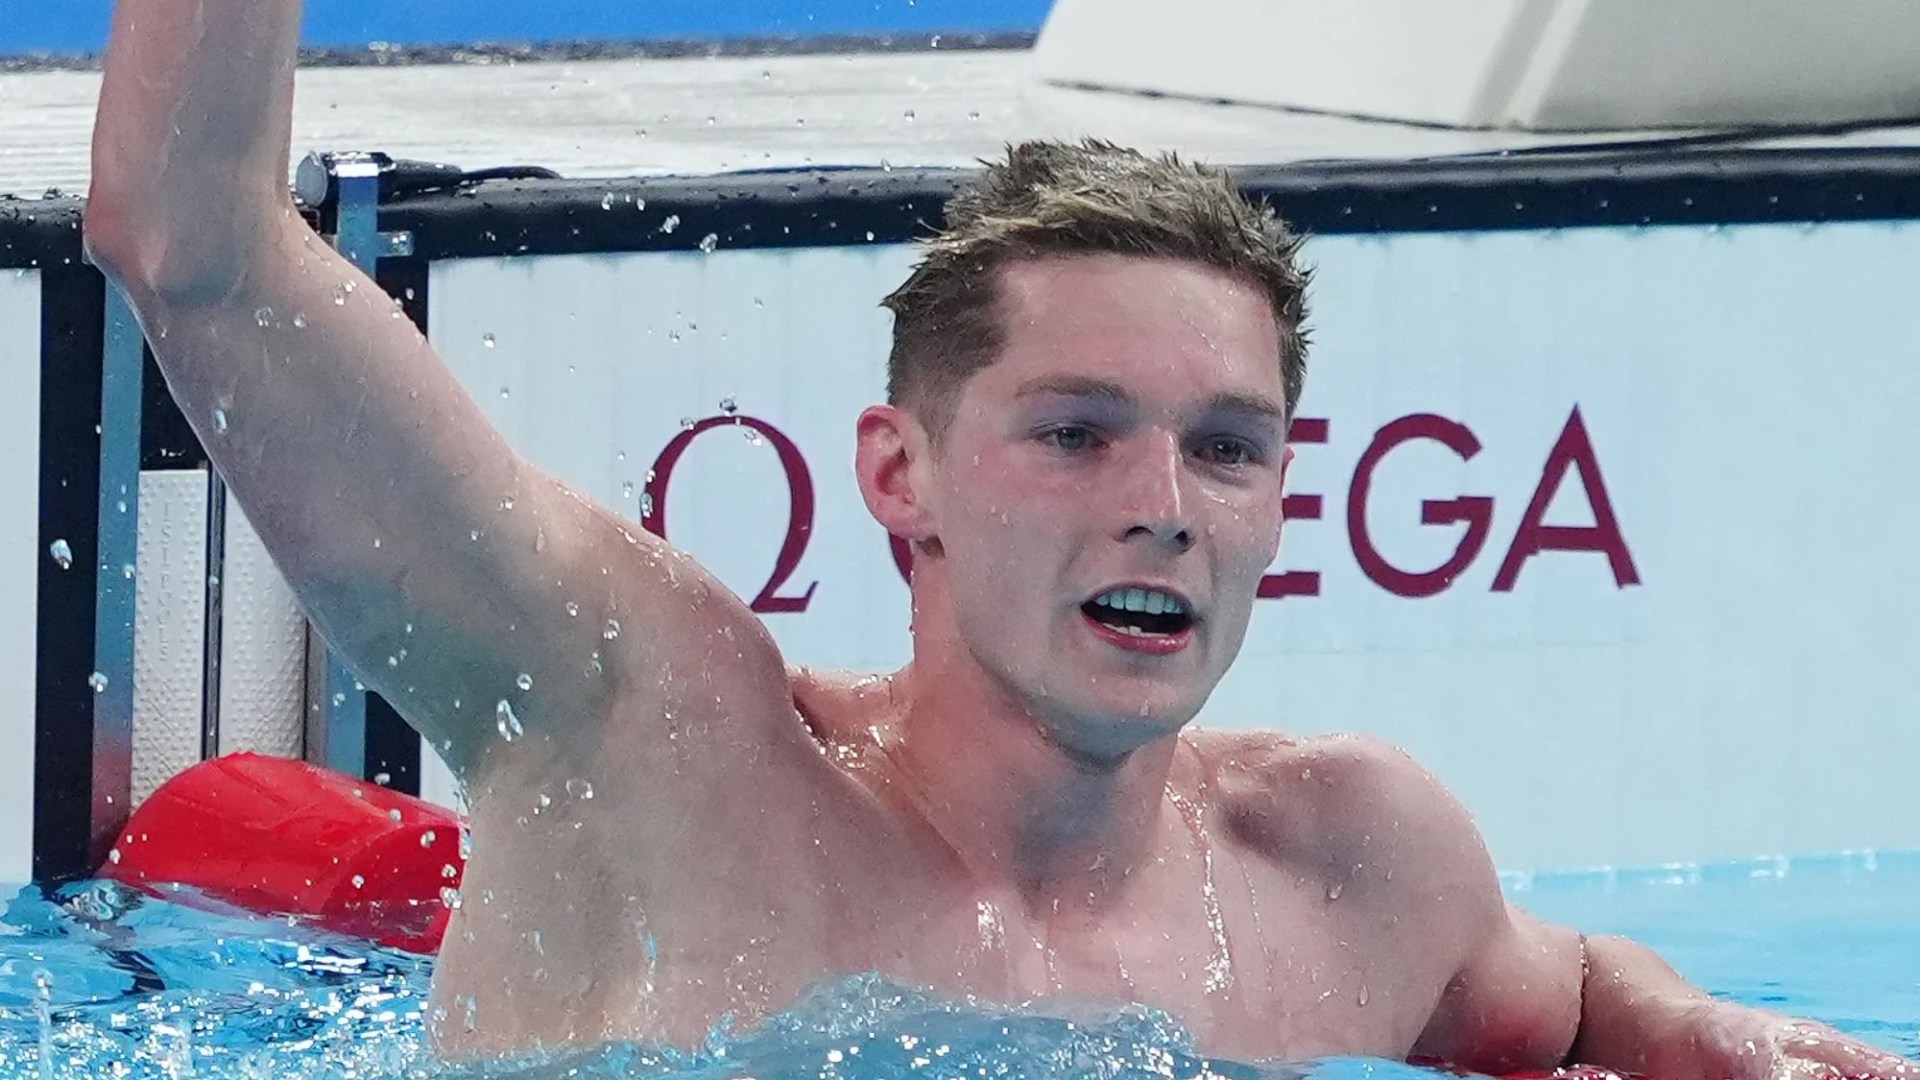 Les nageurs olympiques Ben Proud et Duncan Scott ont raté de peu l’or en remportant tous deux l’argent en piscine